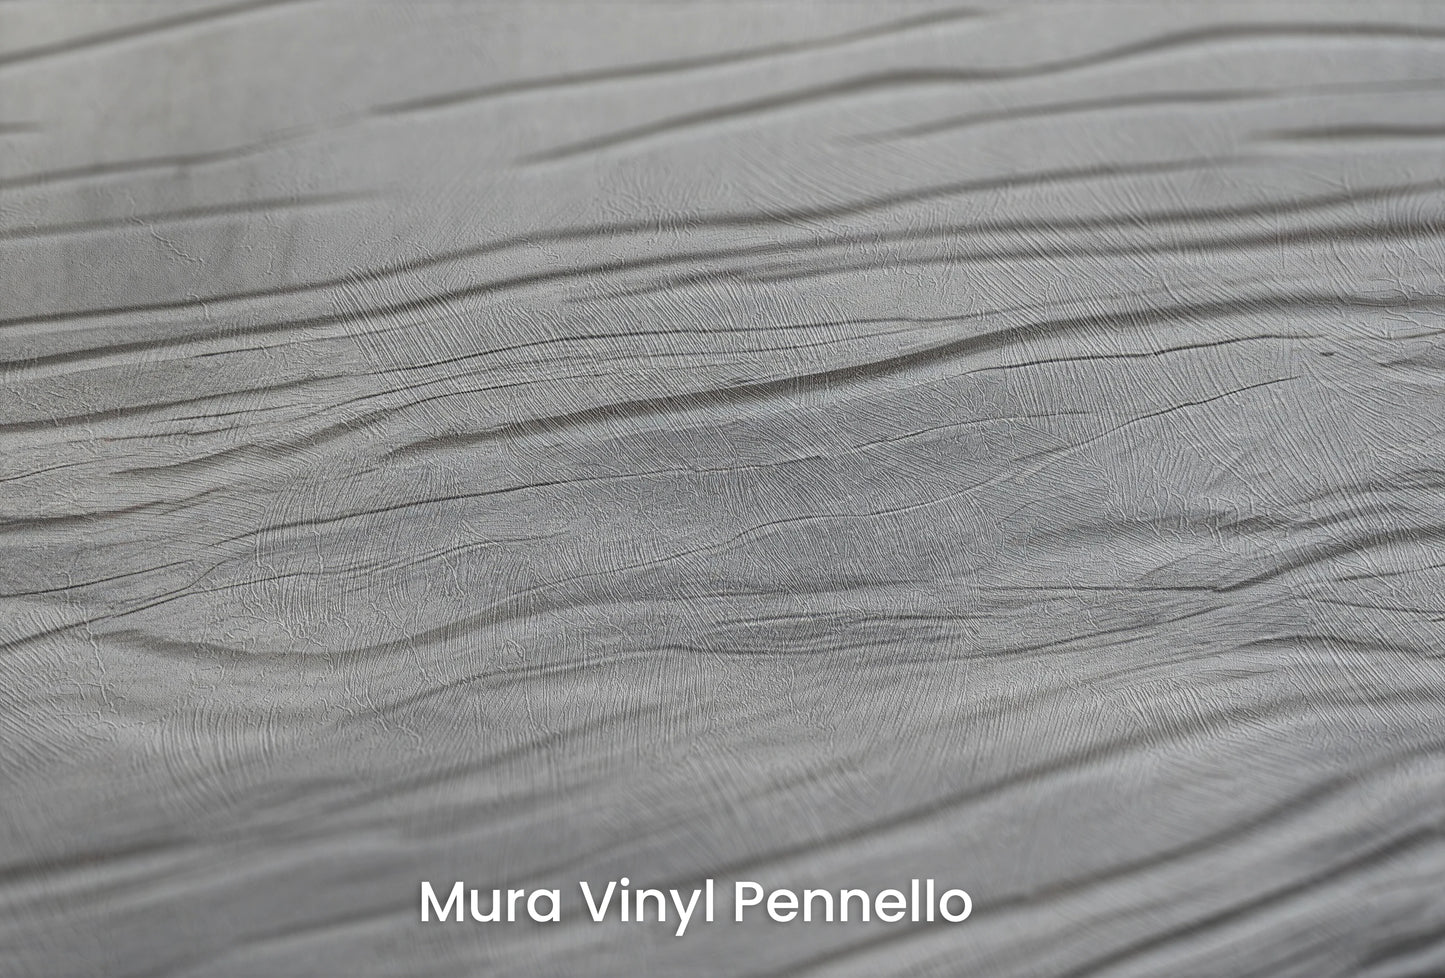 Zbliżenie na artystyczną fototapetę o nazwie Monochrome Current na podłożu Mura Vinyl Pennello - faktura pociągnięć pędzla malarskiego.